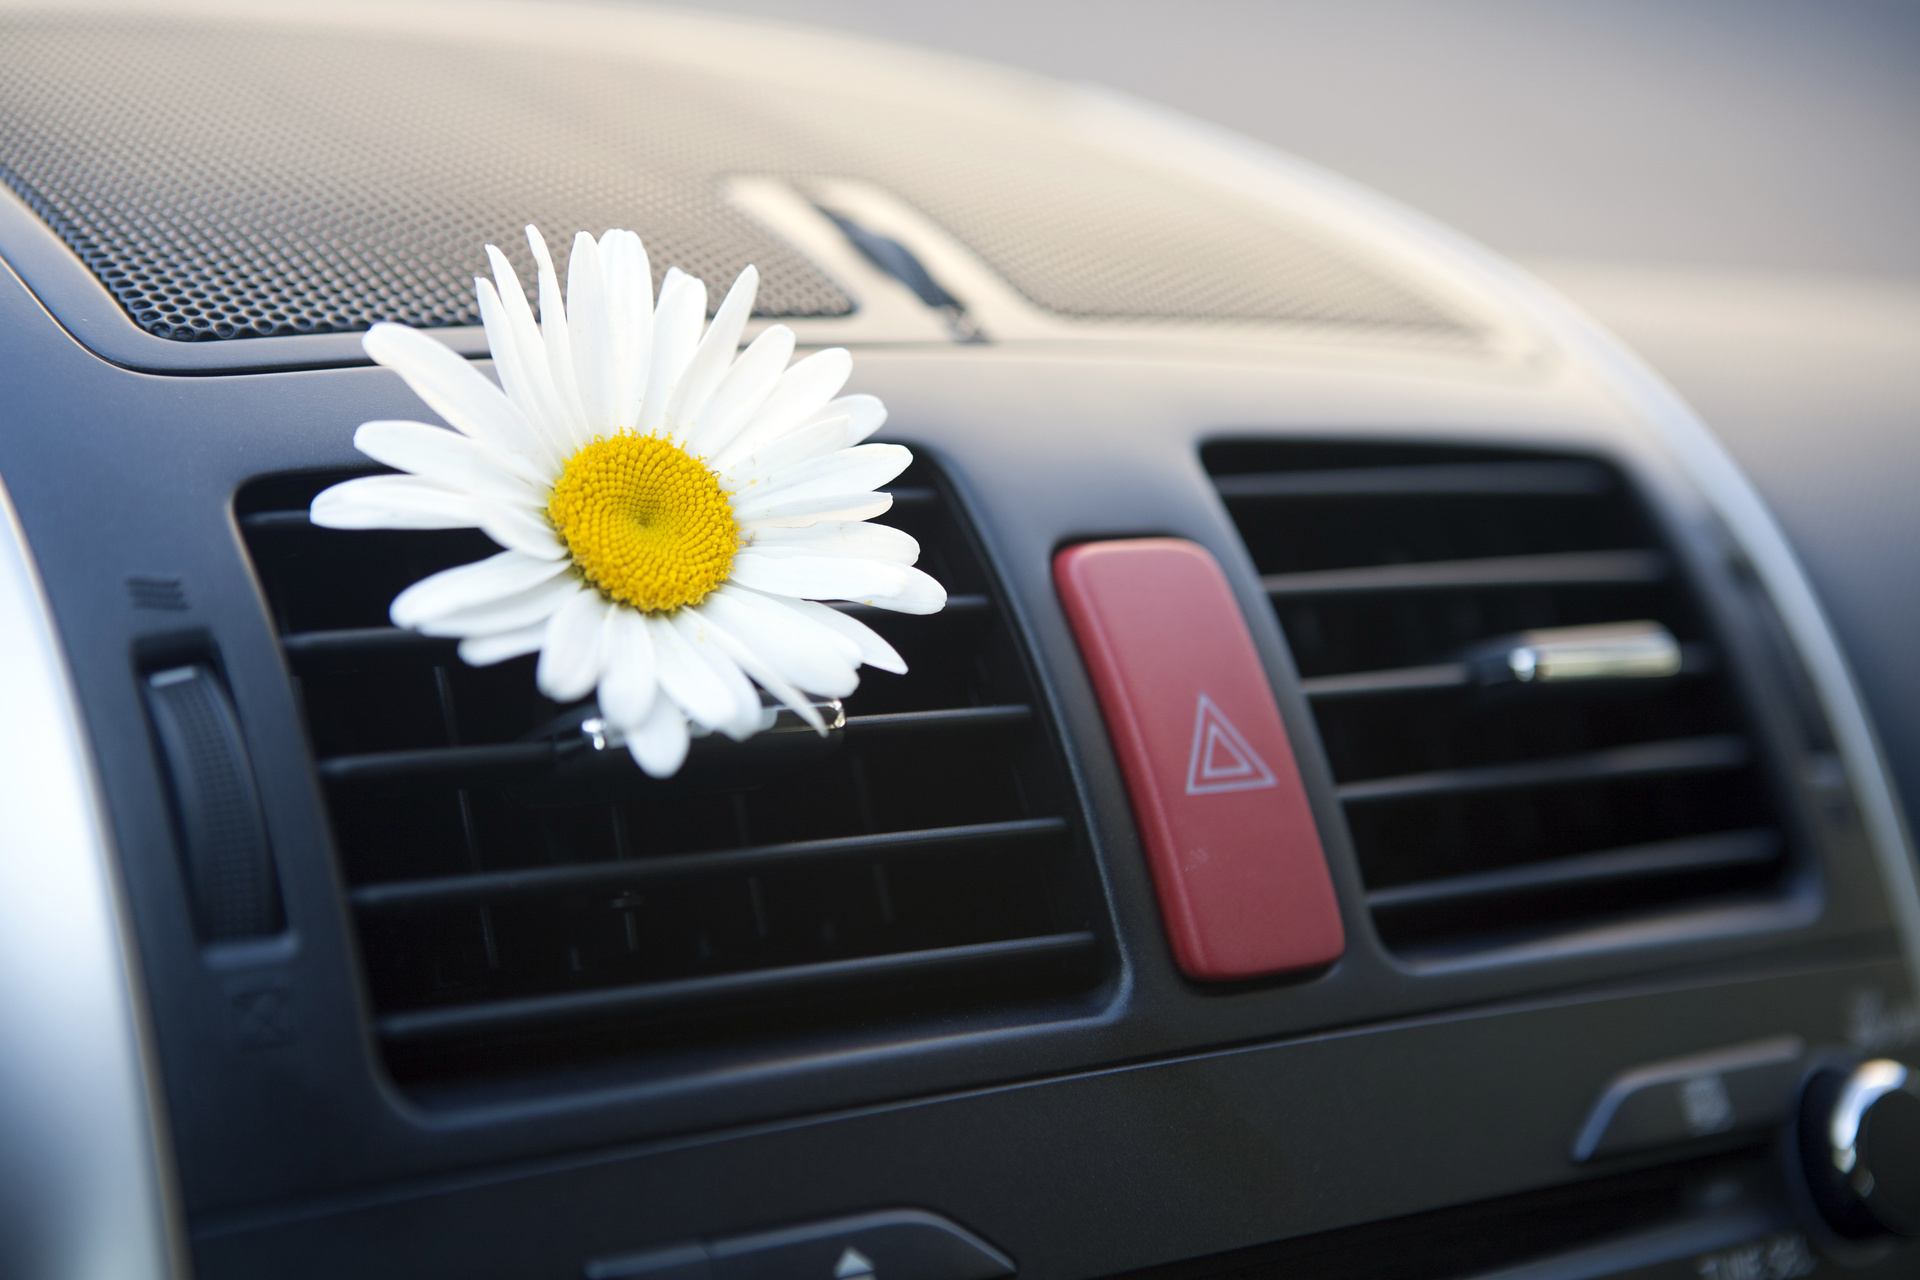 Blomst i et rent luftuttak til air condition i bil